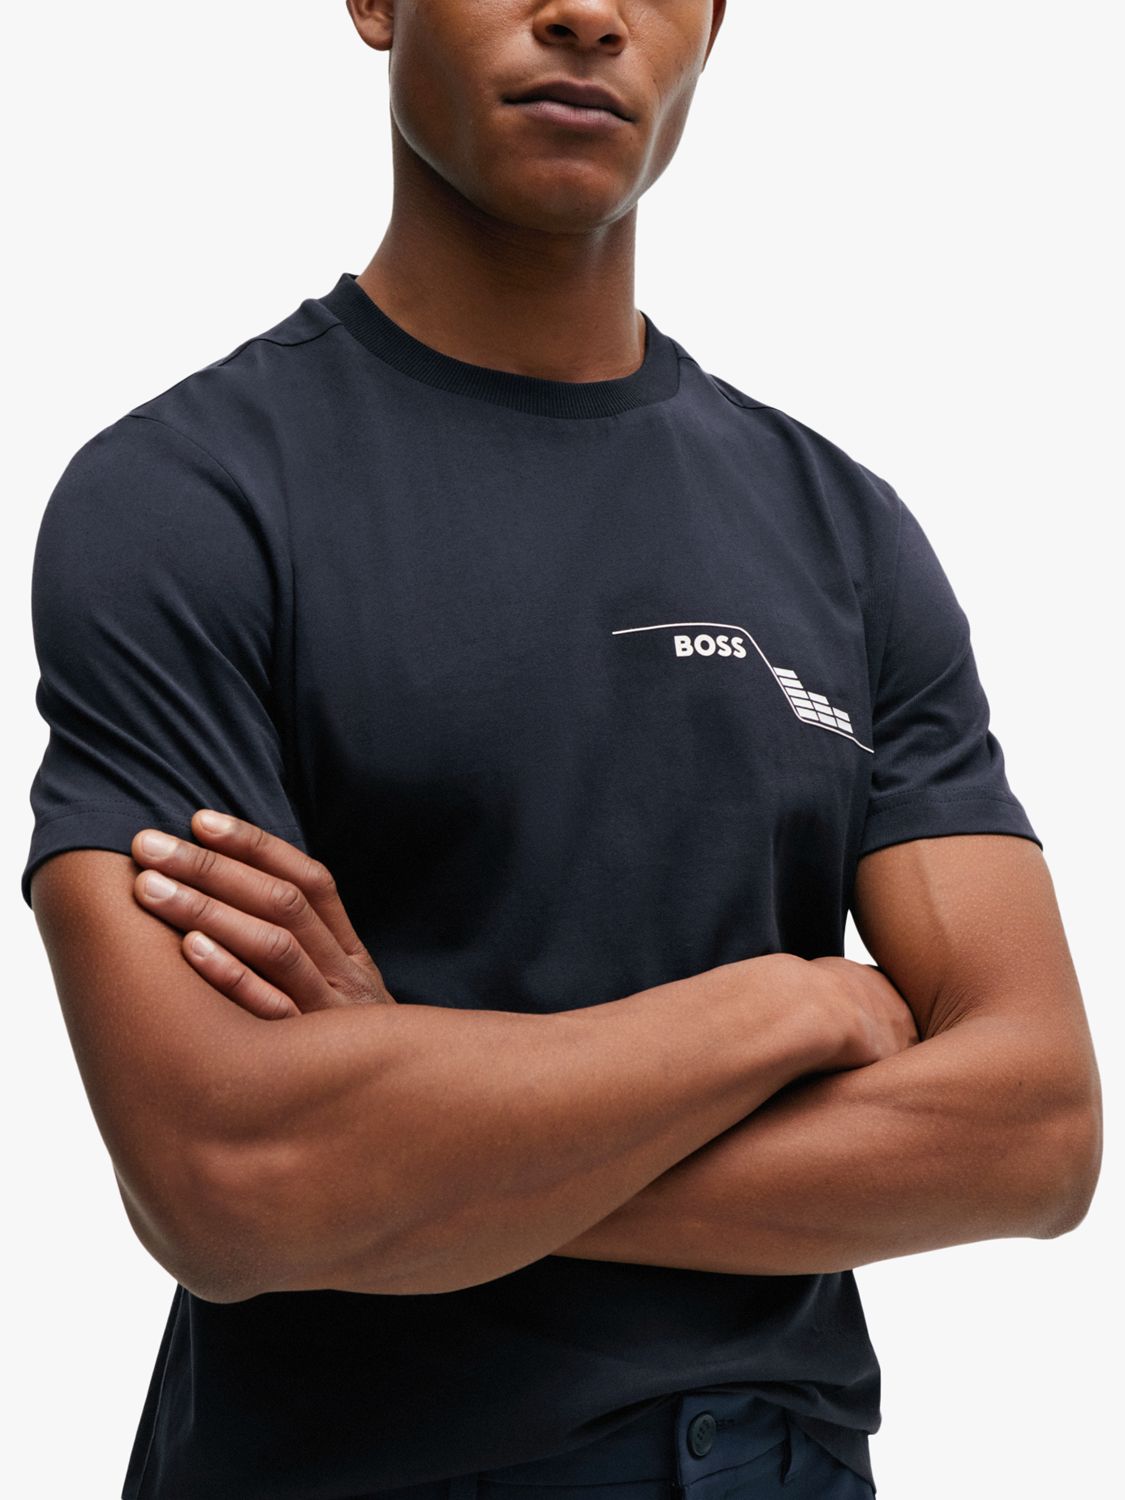 BOSS Tee 3 Short Sleeve T-Shirt, Dark Blue, XL